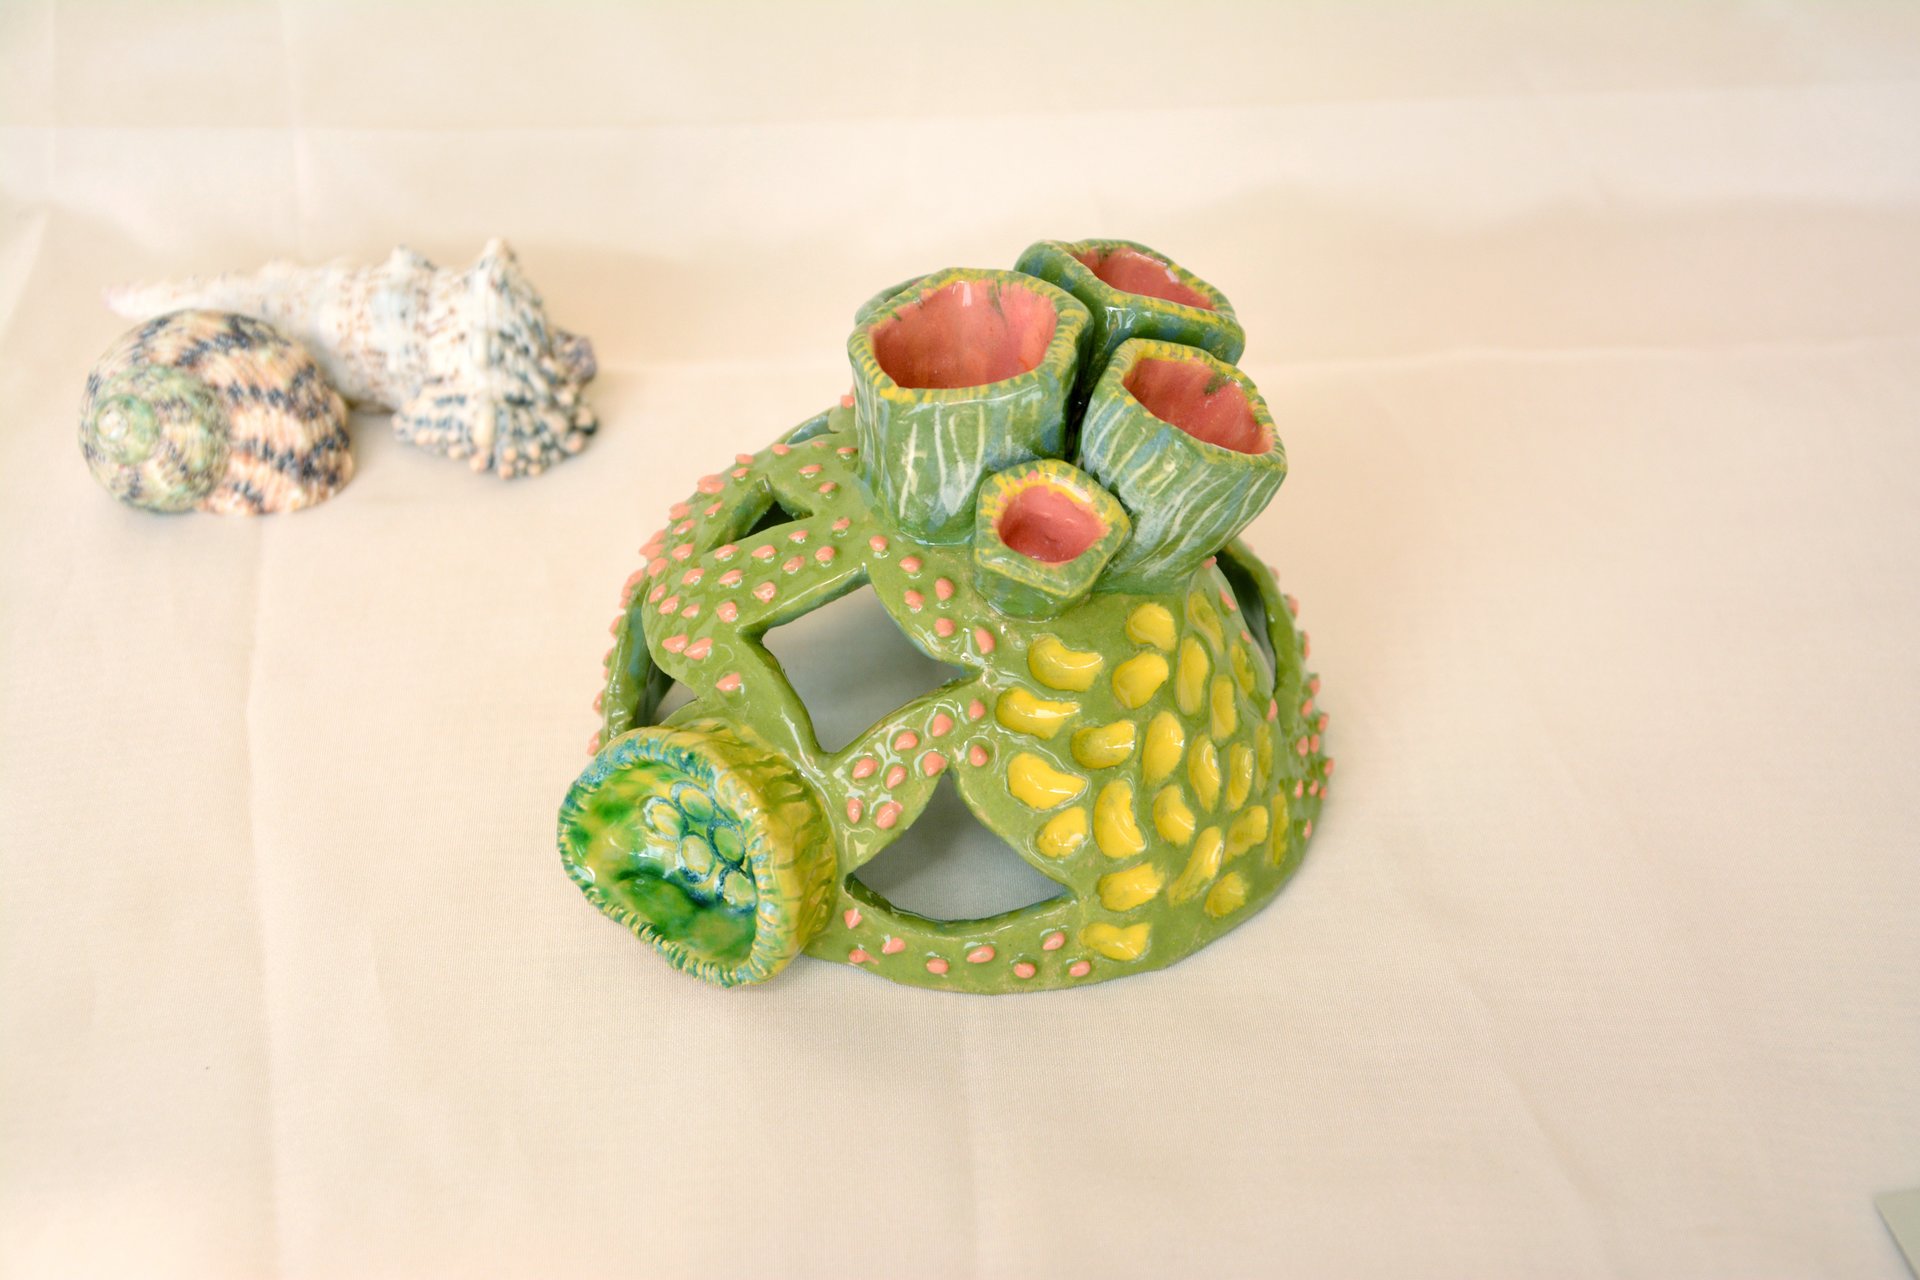 Coral green - Ceramic for aquarium, width 12 cm, height 9 cm, photo 5 of 6.